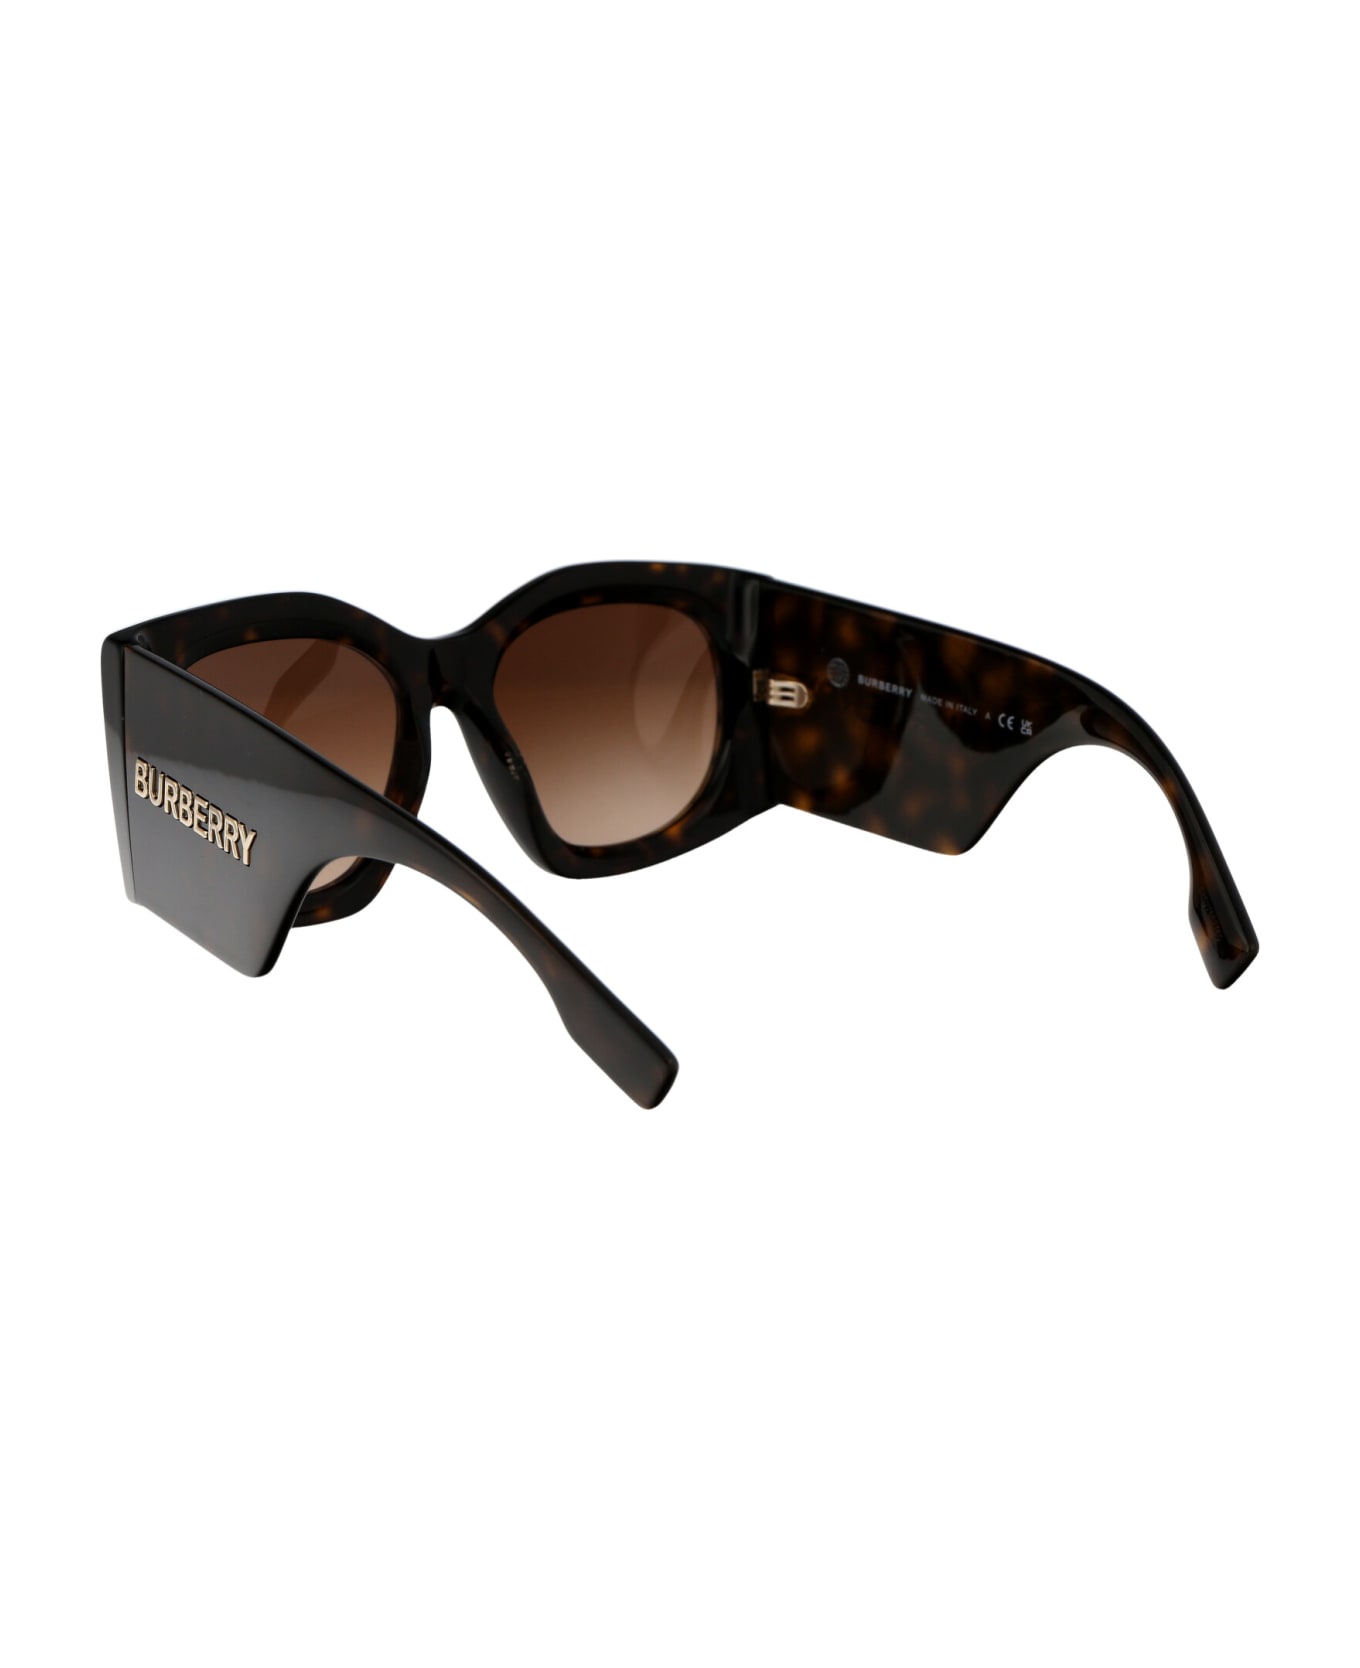 Burberry Eyewear Madeline Sunglasses - 300213 DARK HAVANA